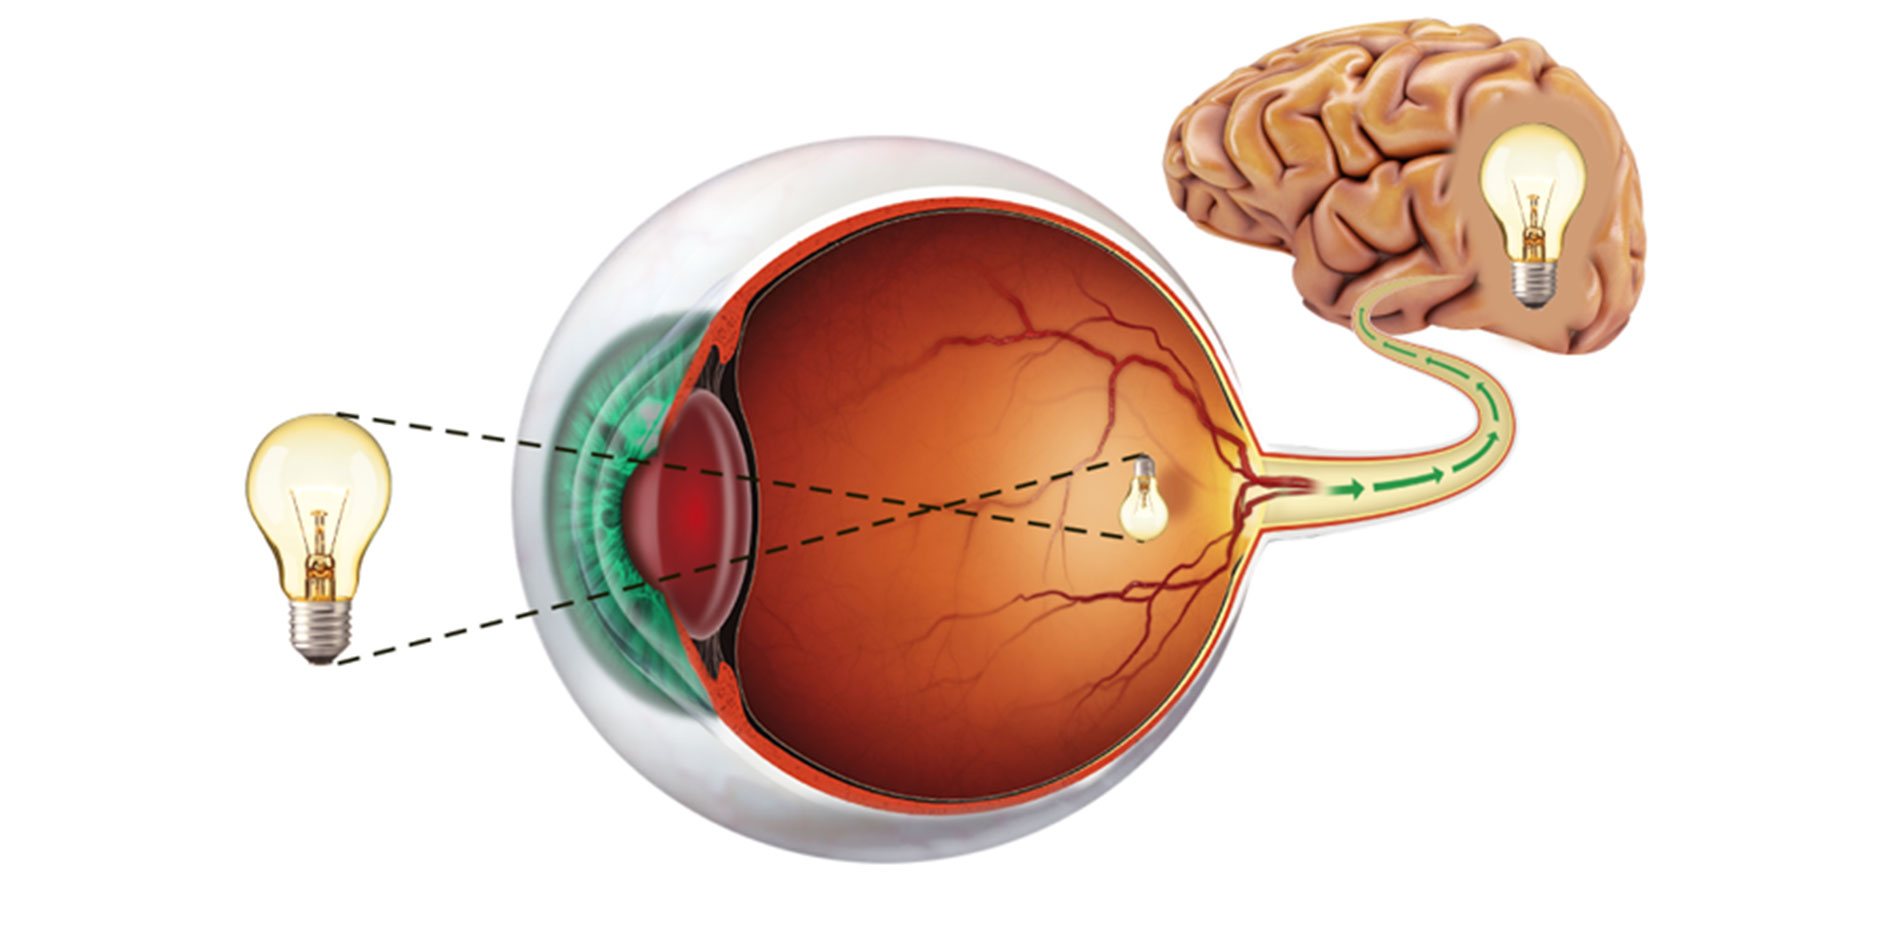 Anatomia dell’occhio – La retina